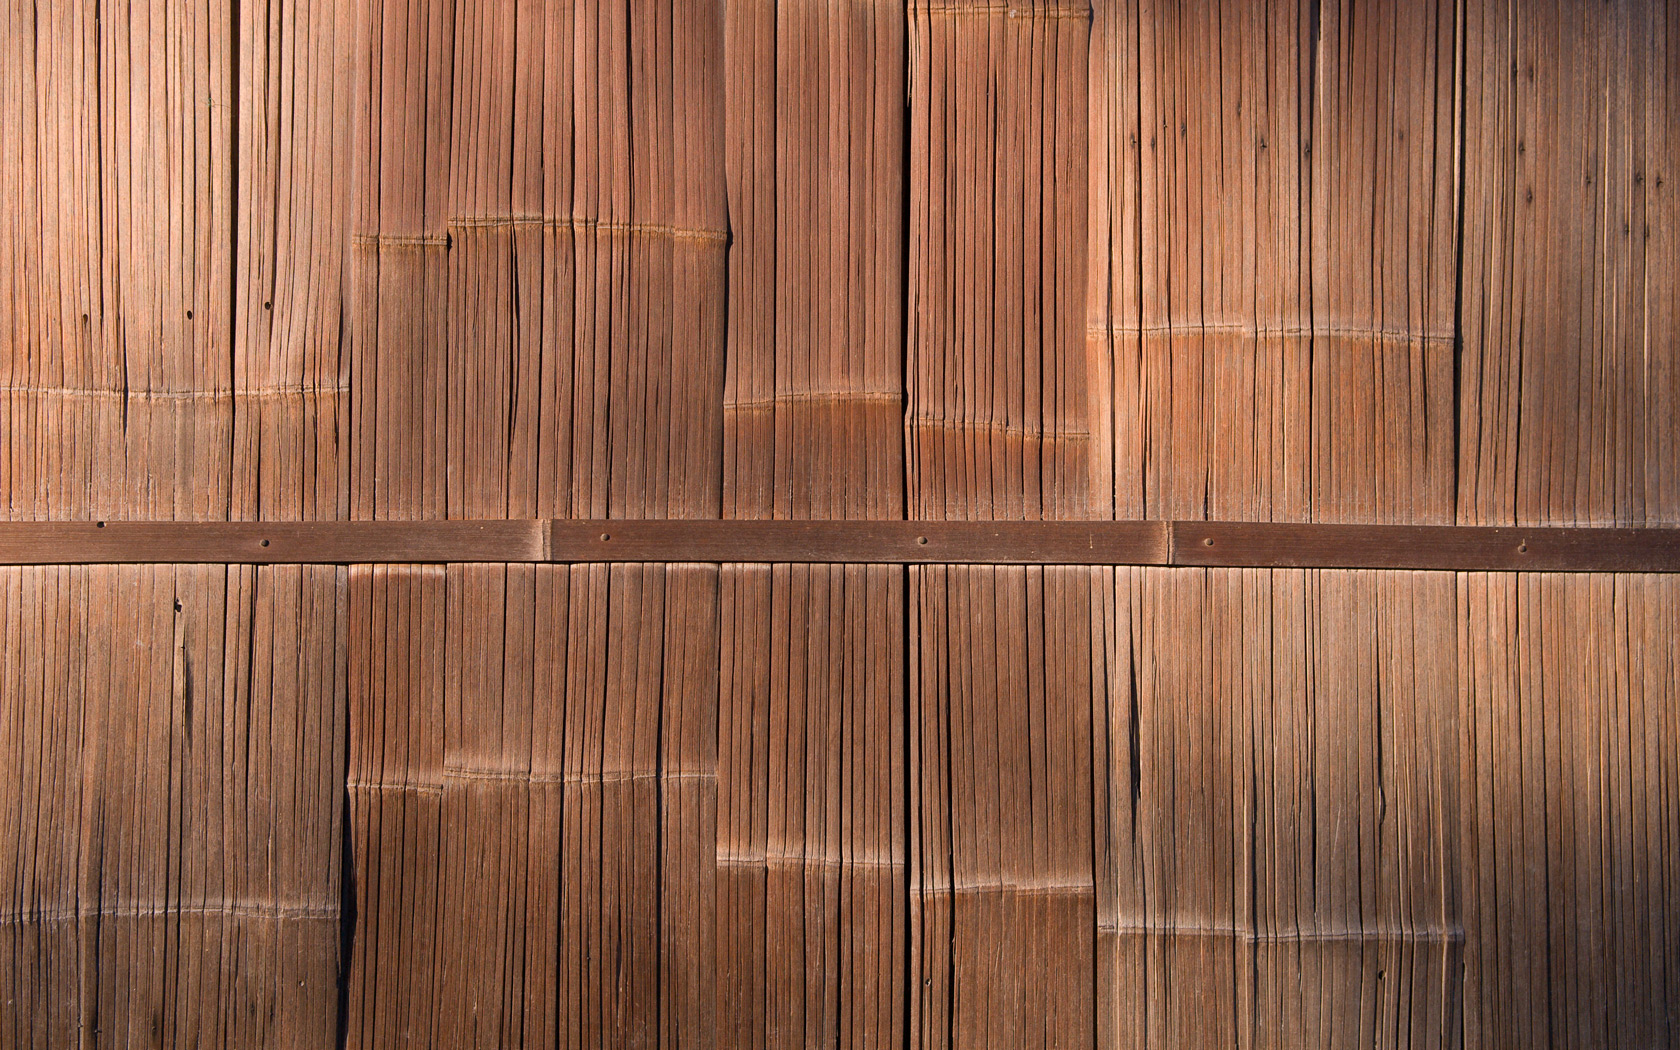 papier peint en bambou pour murs,bois,bois dur,tache de bois,parquet,sol